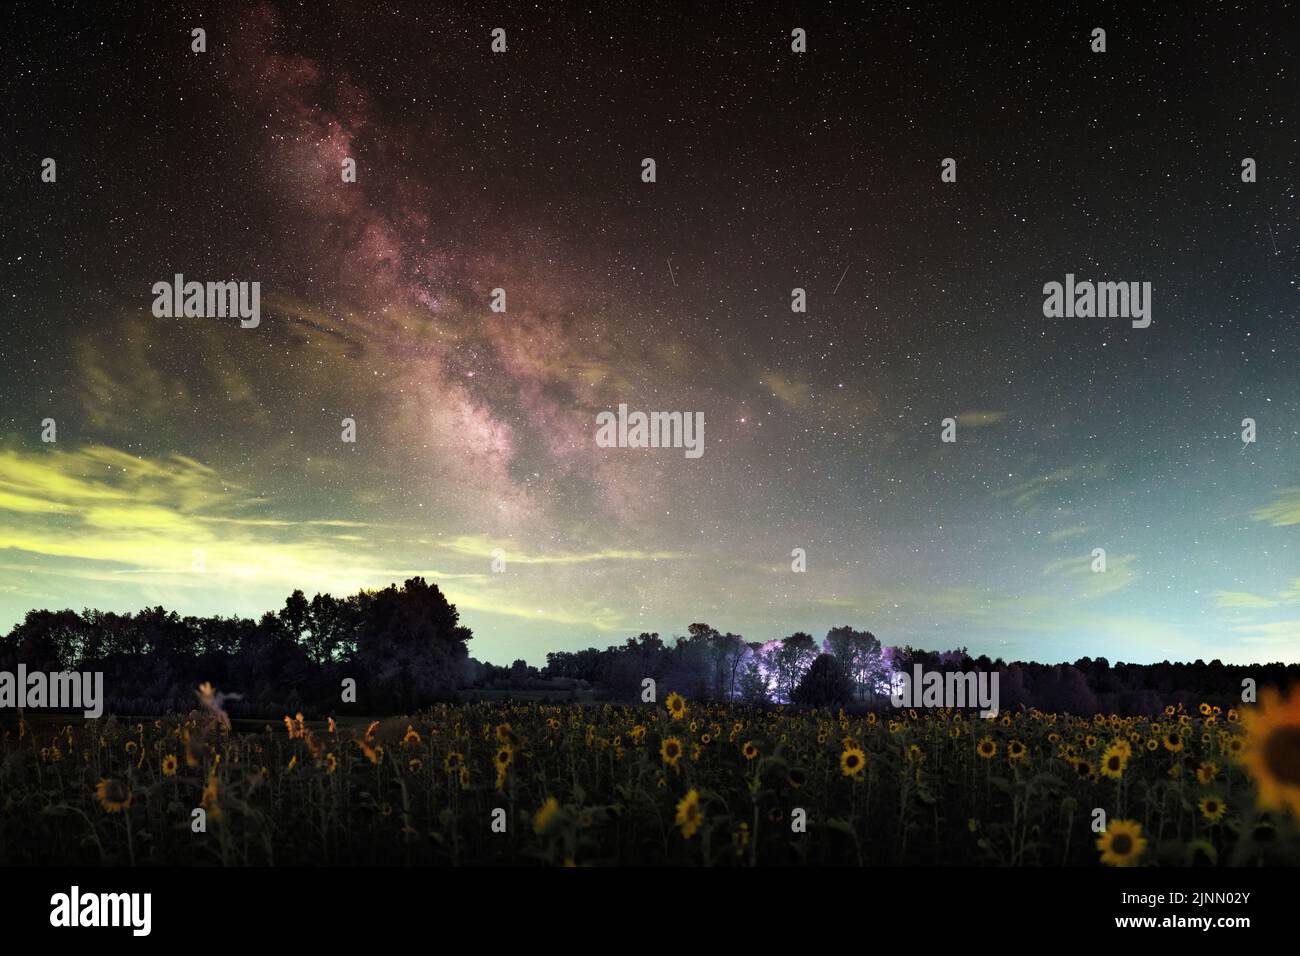 Ein Feld mit kurzen Sonnenblumen unter unserer Milchstraßengalaxie, von Indiana aus gesehen. Wolken verdecken teilweise die Sterne. Enthält Umweltverschmutzung. Stockfoto